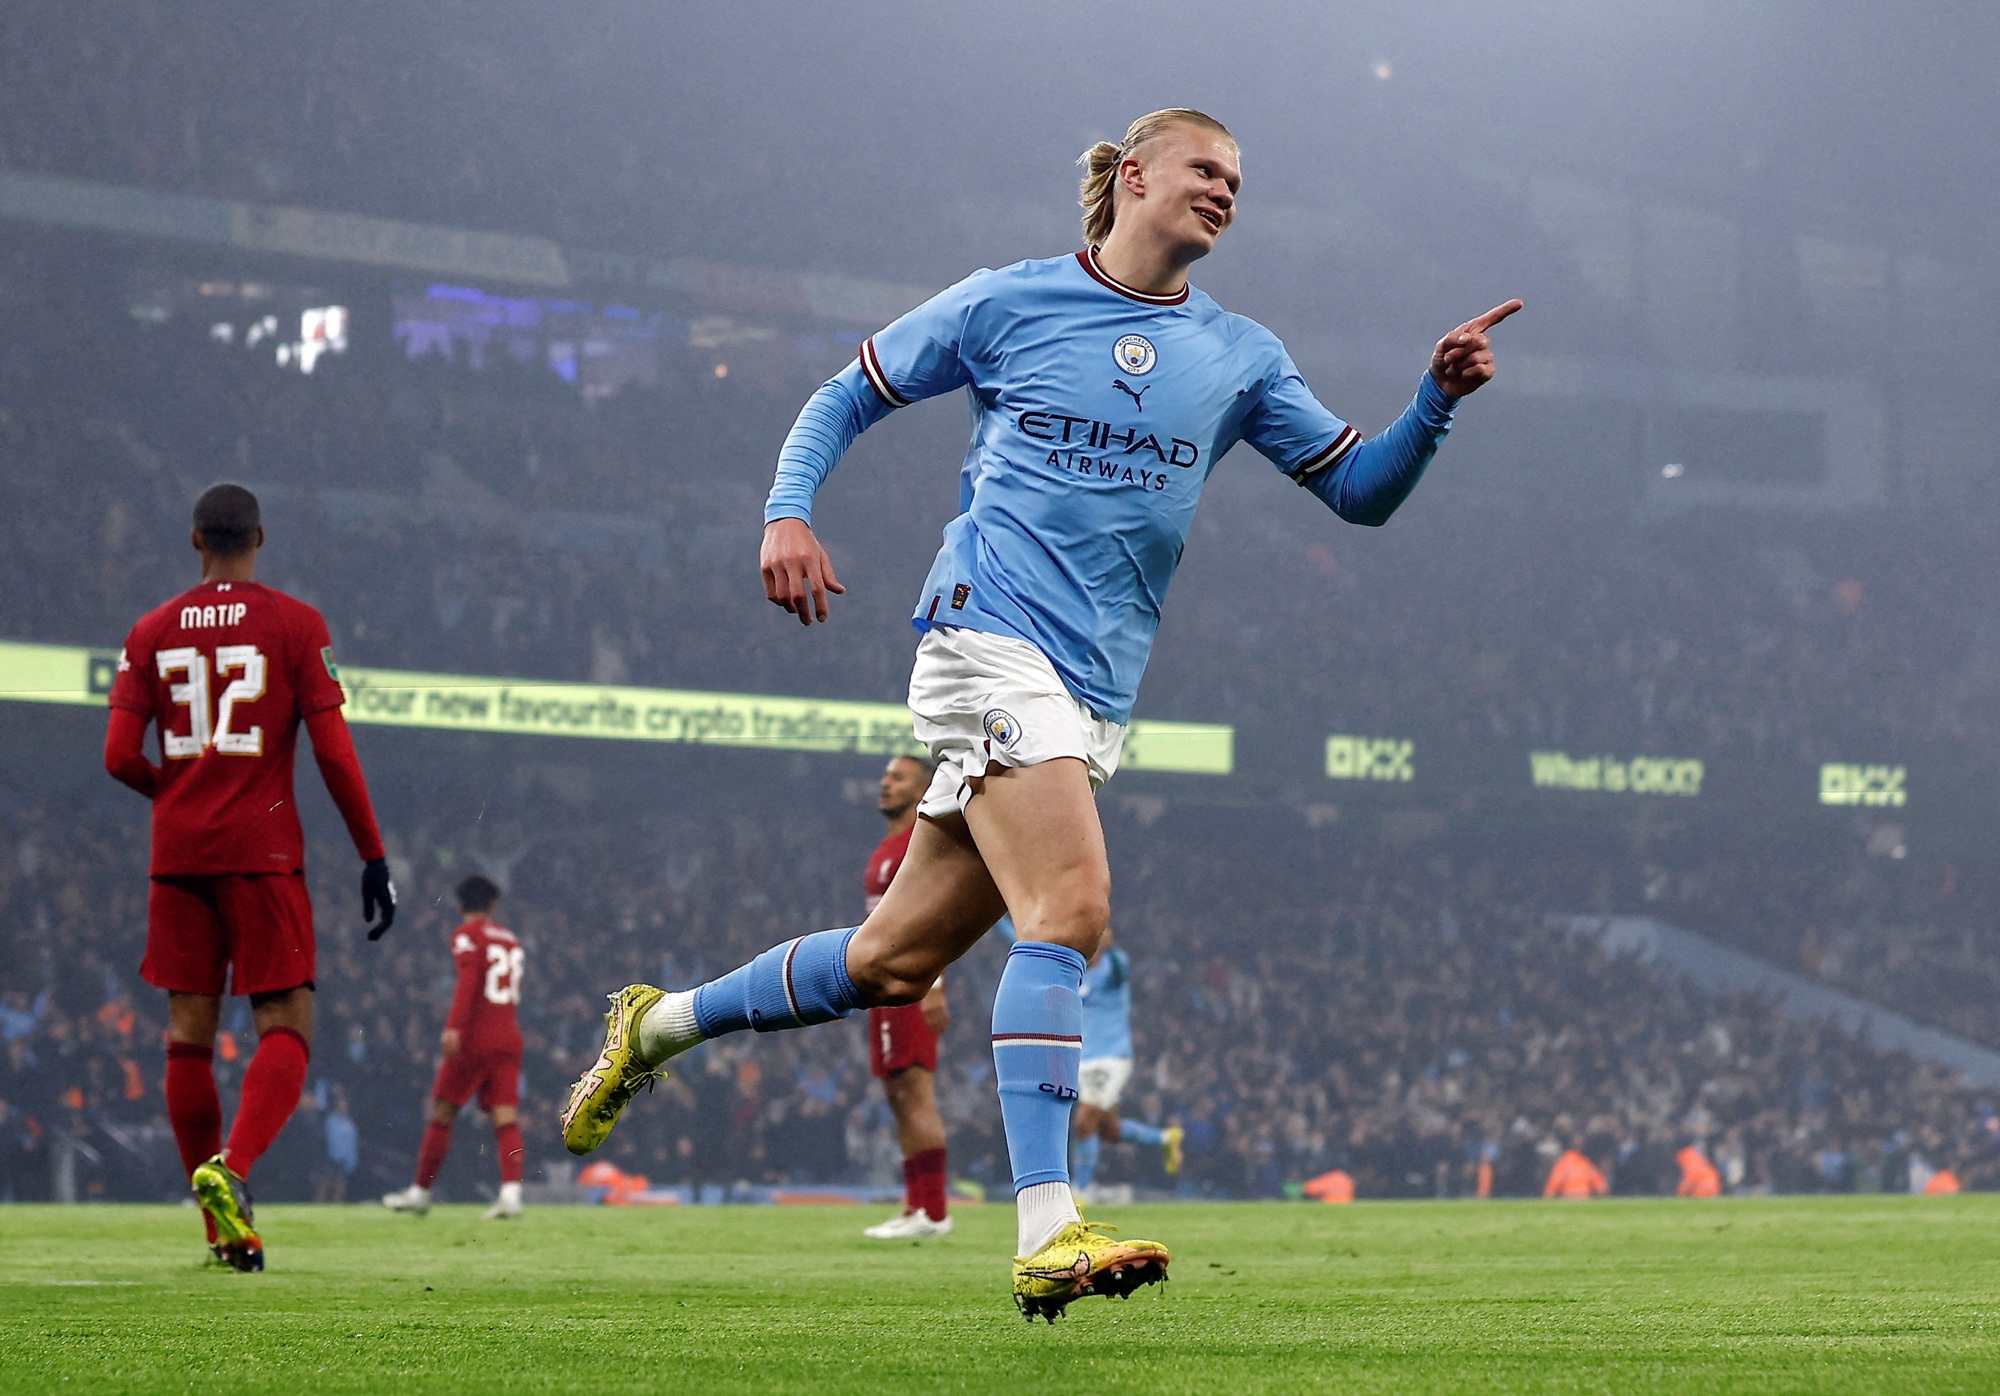 Đại chiến League Cup, Liverpool nhường bước Man City ở trận cầu 5 bàn thắng - Ảnh 2.